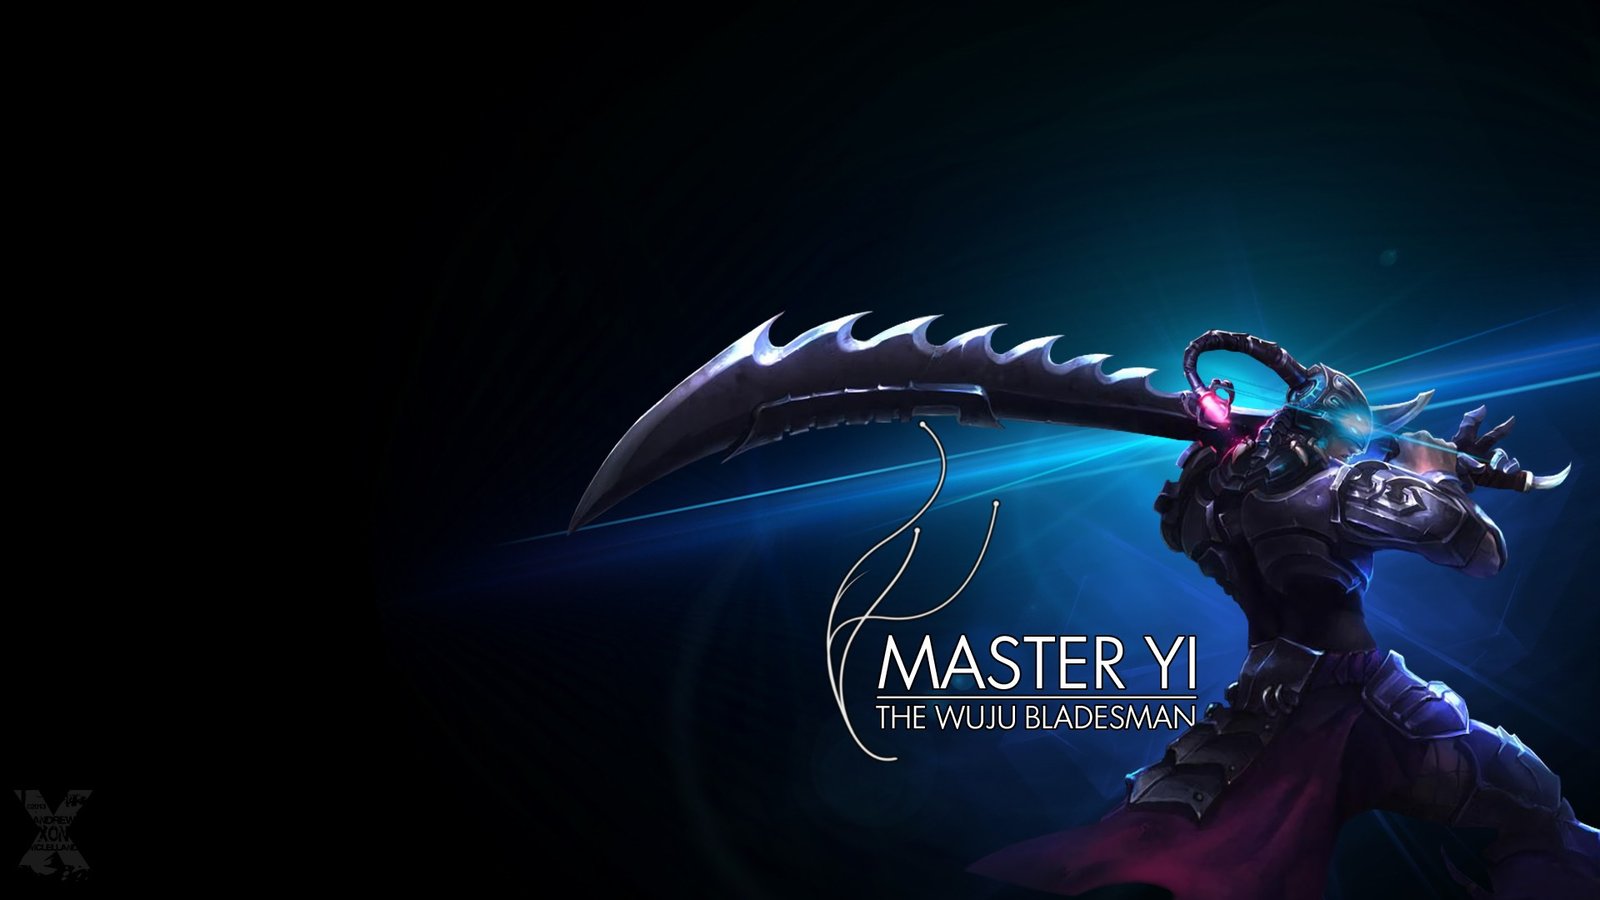 Headhunter Master Yi by XONSOLE HD Wallpaper Fan Art Artwork League of Legends lol